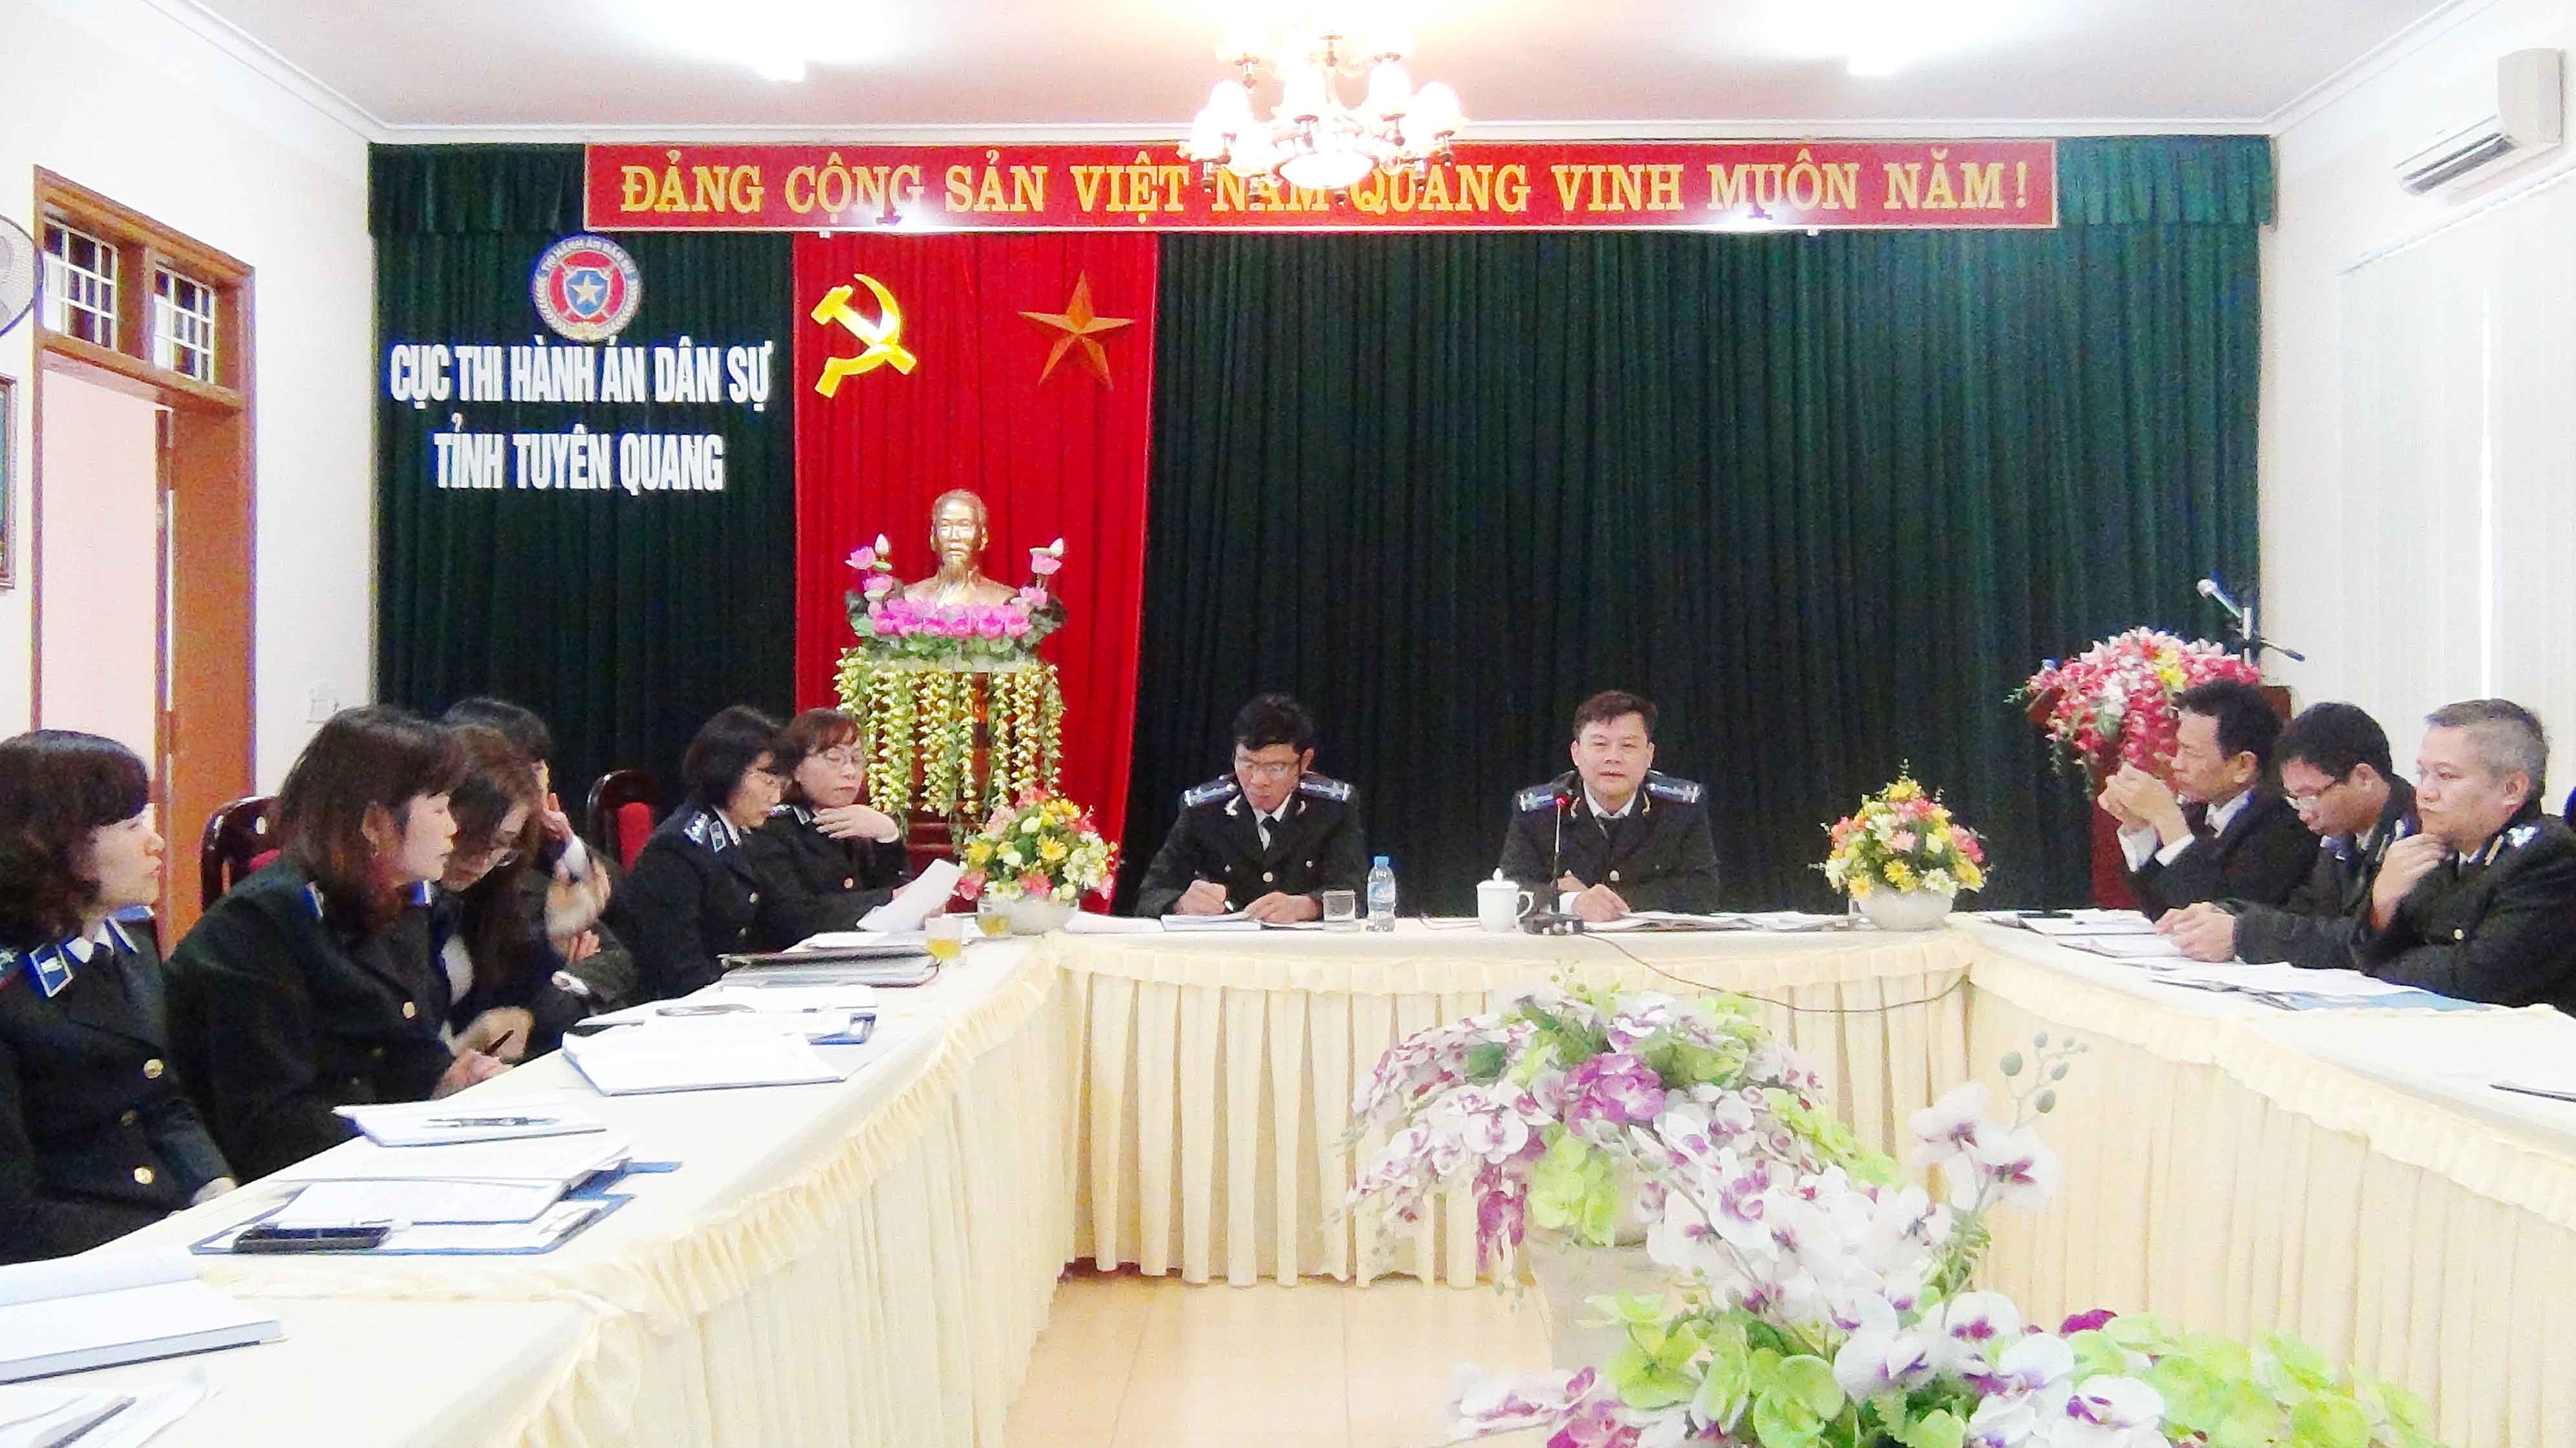 Thi hành án dân sự tỉnh Tuyên Quang đẩy mạnh ứng dụng công nghệ thông tin trong chỉ đạo, điều hành và hoạt động thi hành án.